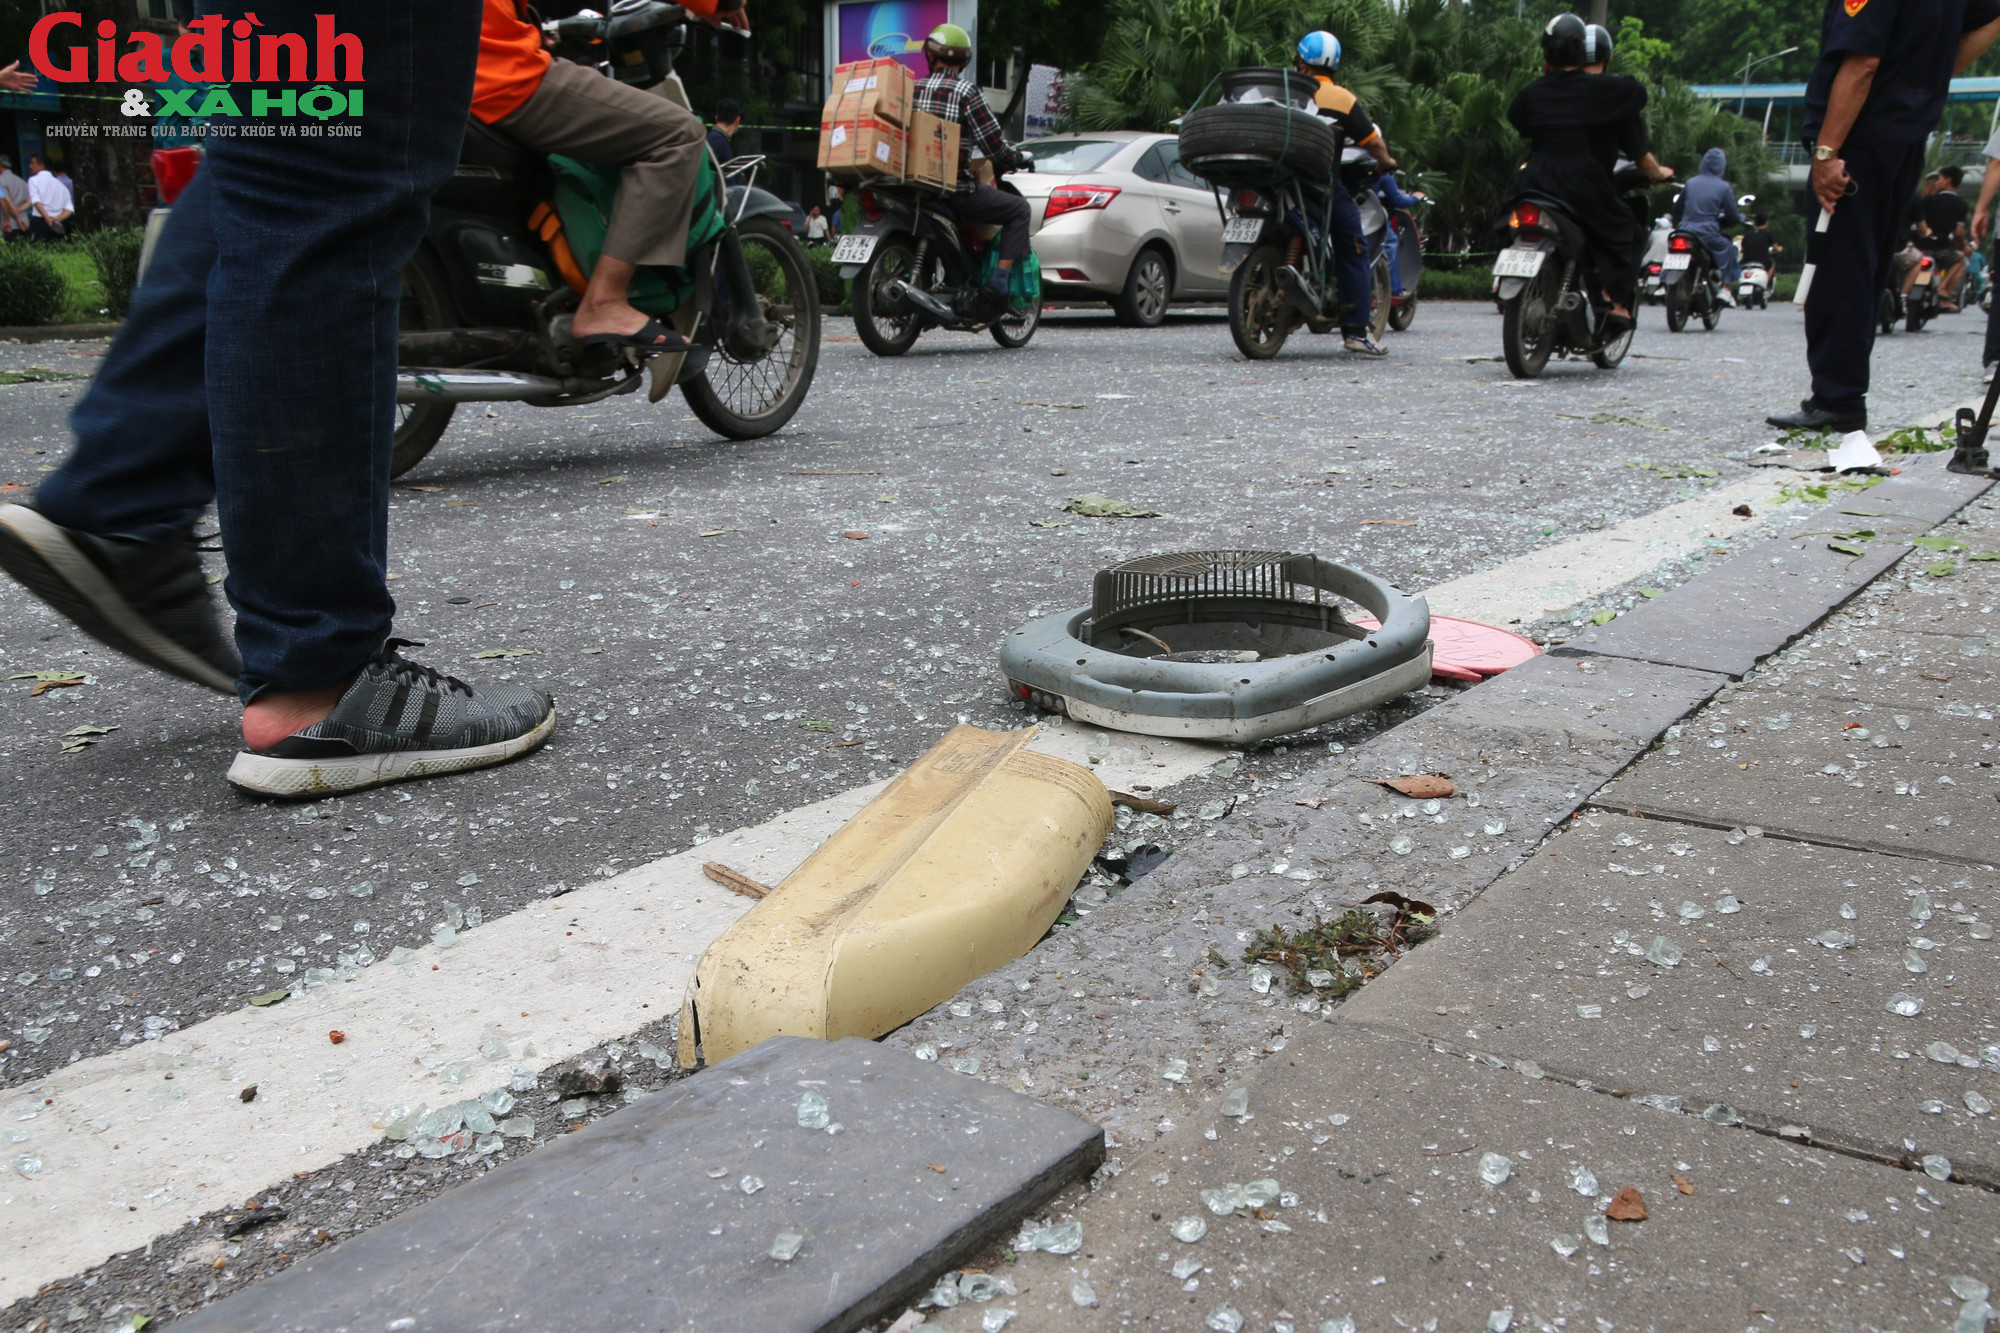 Người dân kể lại phút giây kinh hoàng khi bình gas phát nổ như bom ở Hà Nội - Ảnh 5.